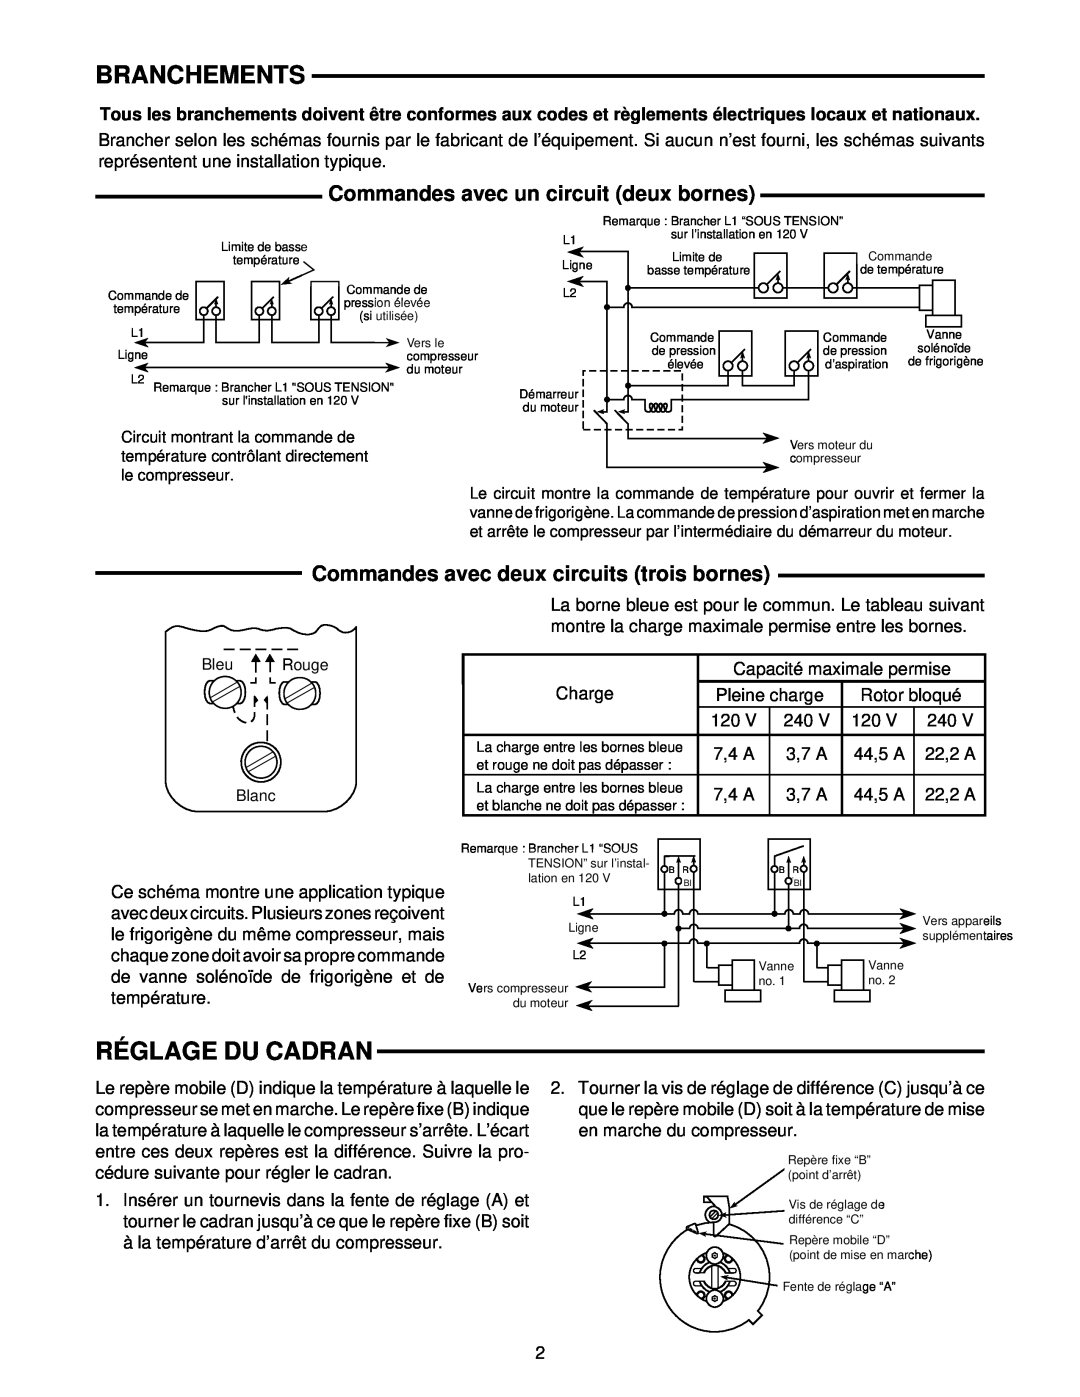 White Rodgers 241-2, 1609 installation instructions Branchements, Réglage Du Cadran, Commandes avec un circuit deux bornes 